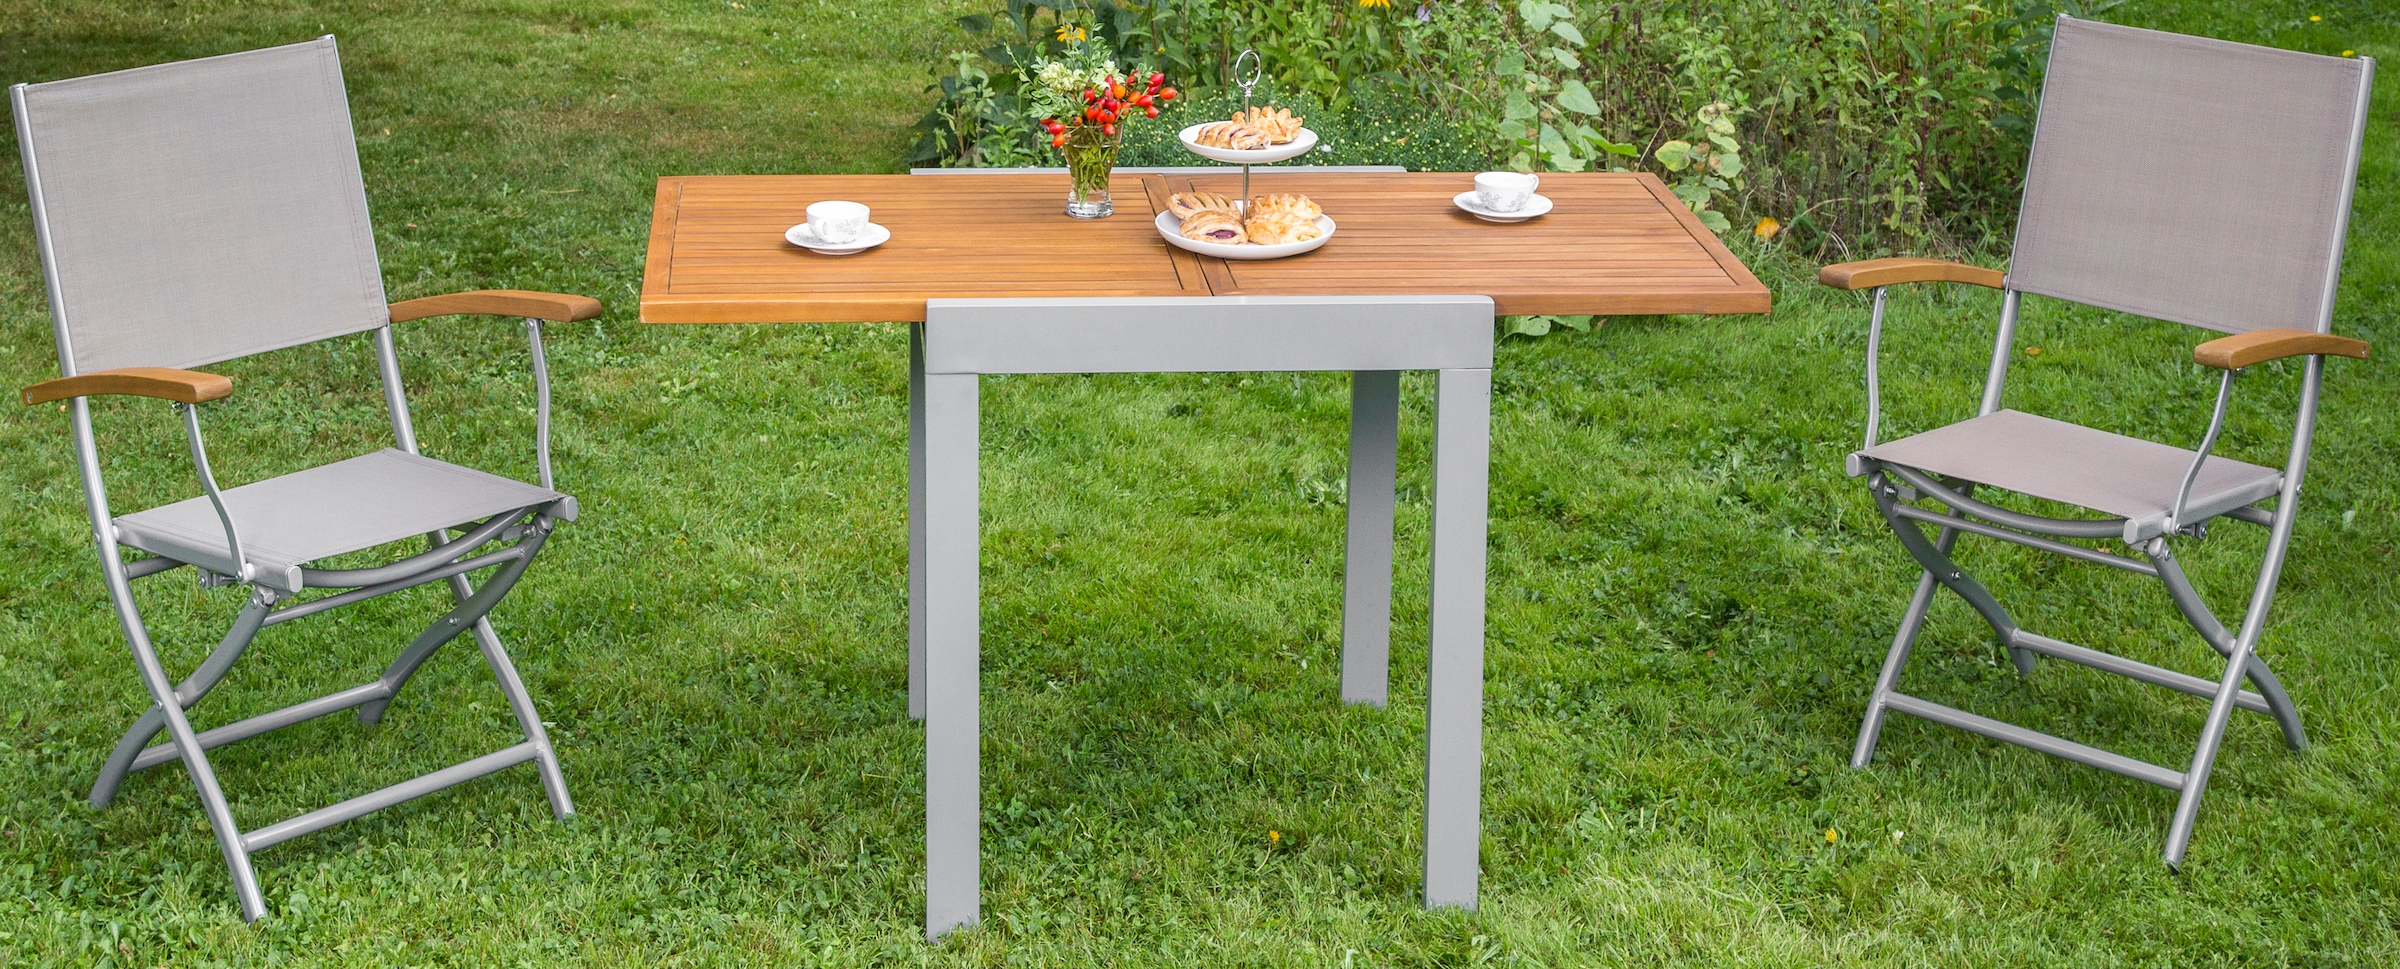 MERXX Gartentisch »Balkonauszieh-tisch«, 65x130 cm versandkostenfrei auf